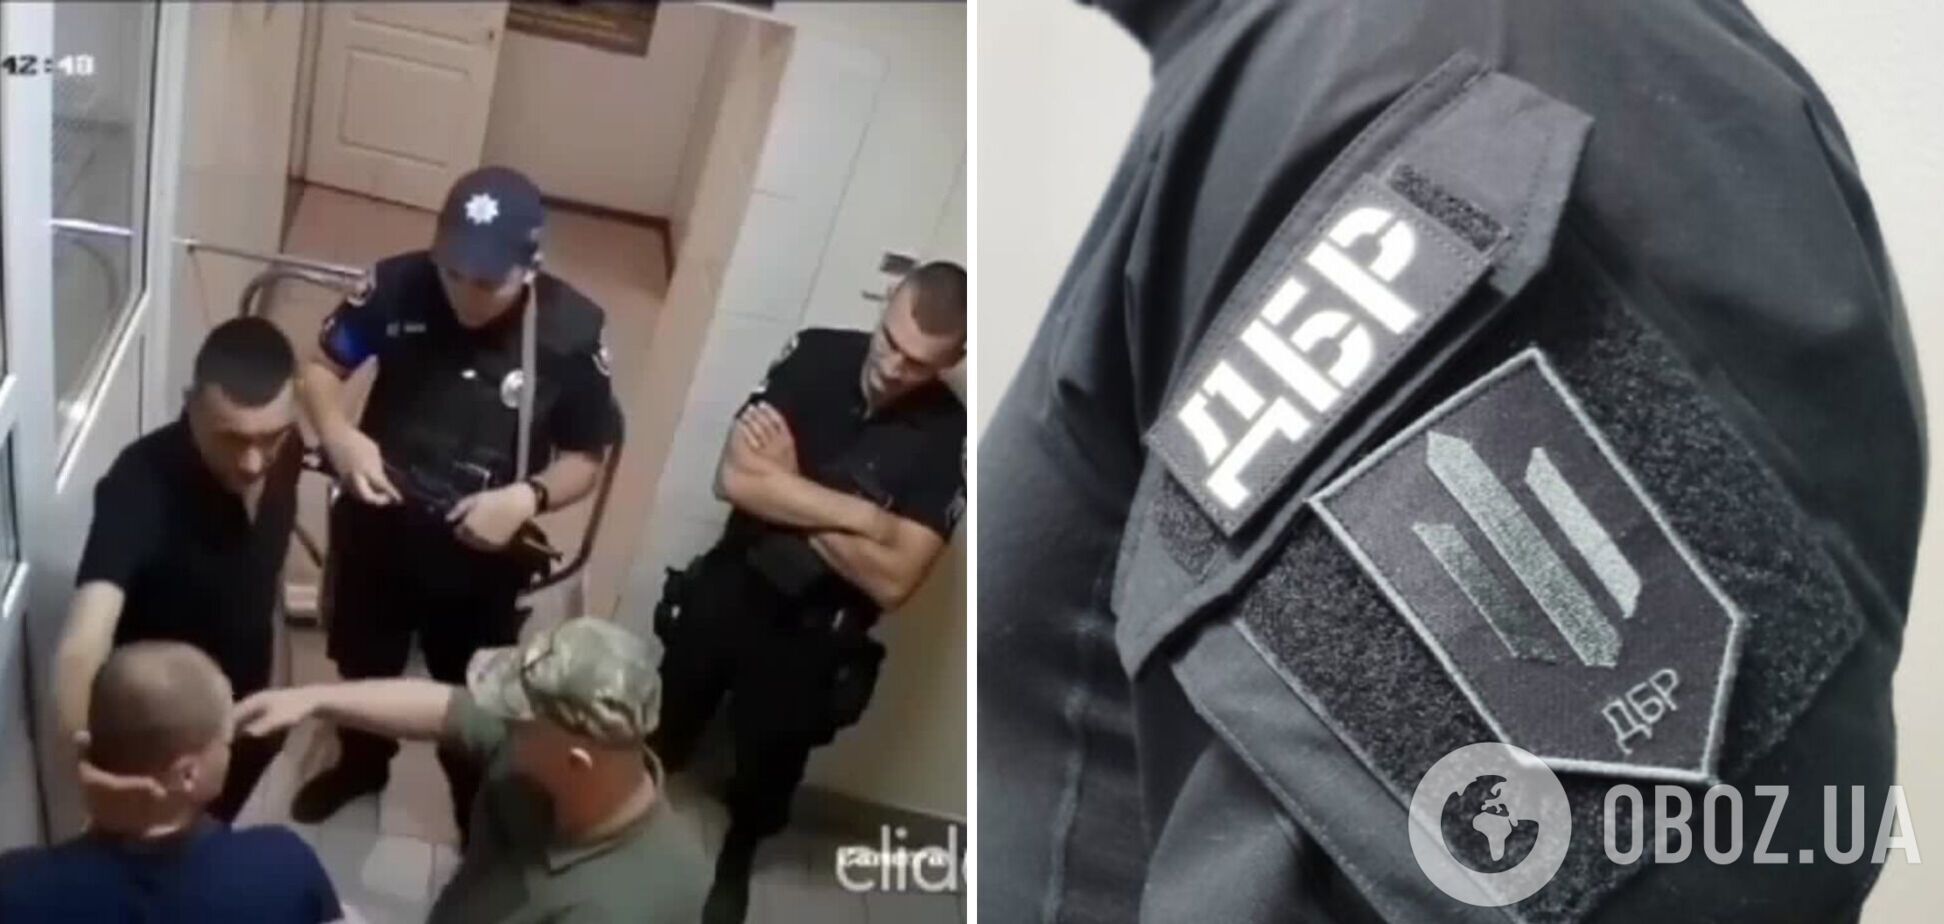 Побиття мобілізованого у приміщенні Чернівецького ТЦК: дії військових та правоохоронців розслідує ДБР. Відео